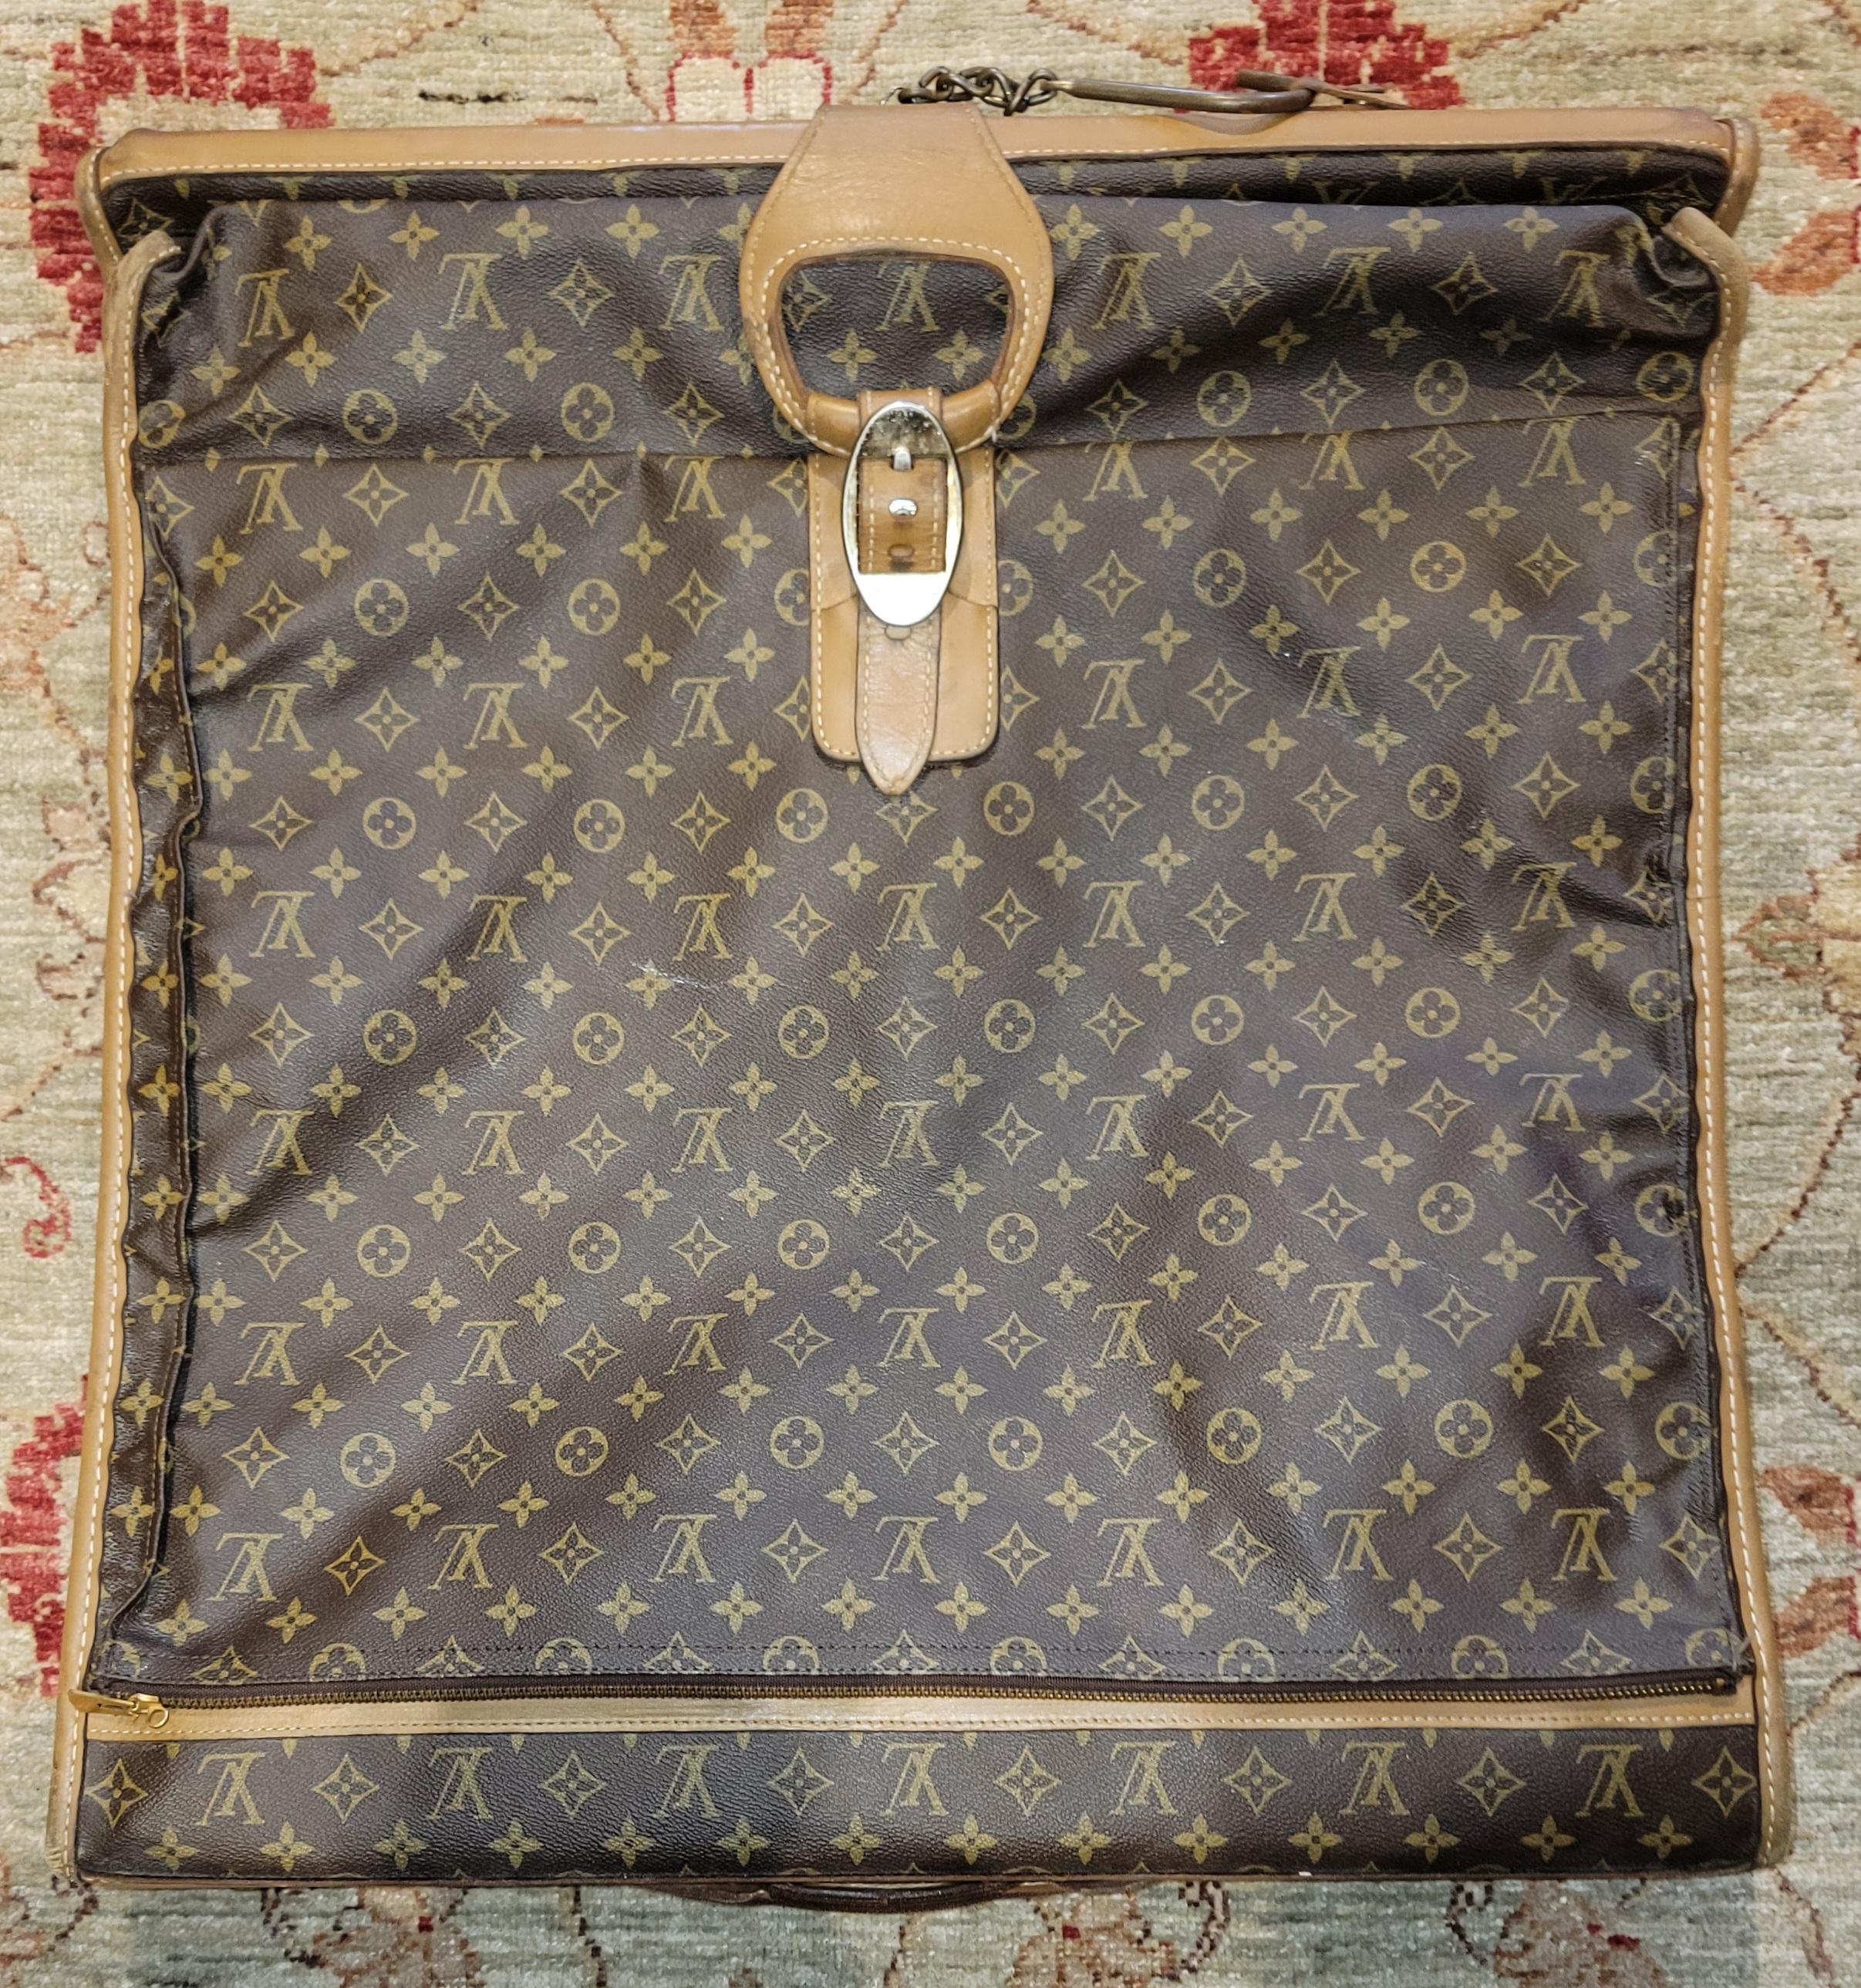 Sac de transport pour vêtements Monogram de Louis Vuitton. Il y a un crochet au bas du sac qui, une fois ouvert, peut être suspendu dans un placard. Facile à ouvrir et à exposer les vêtements lorsqu'on se couche pour les sortir. Il s'agit d'un sac